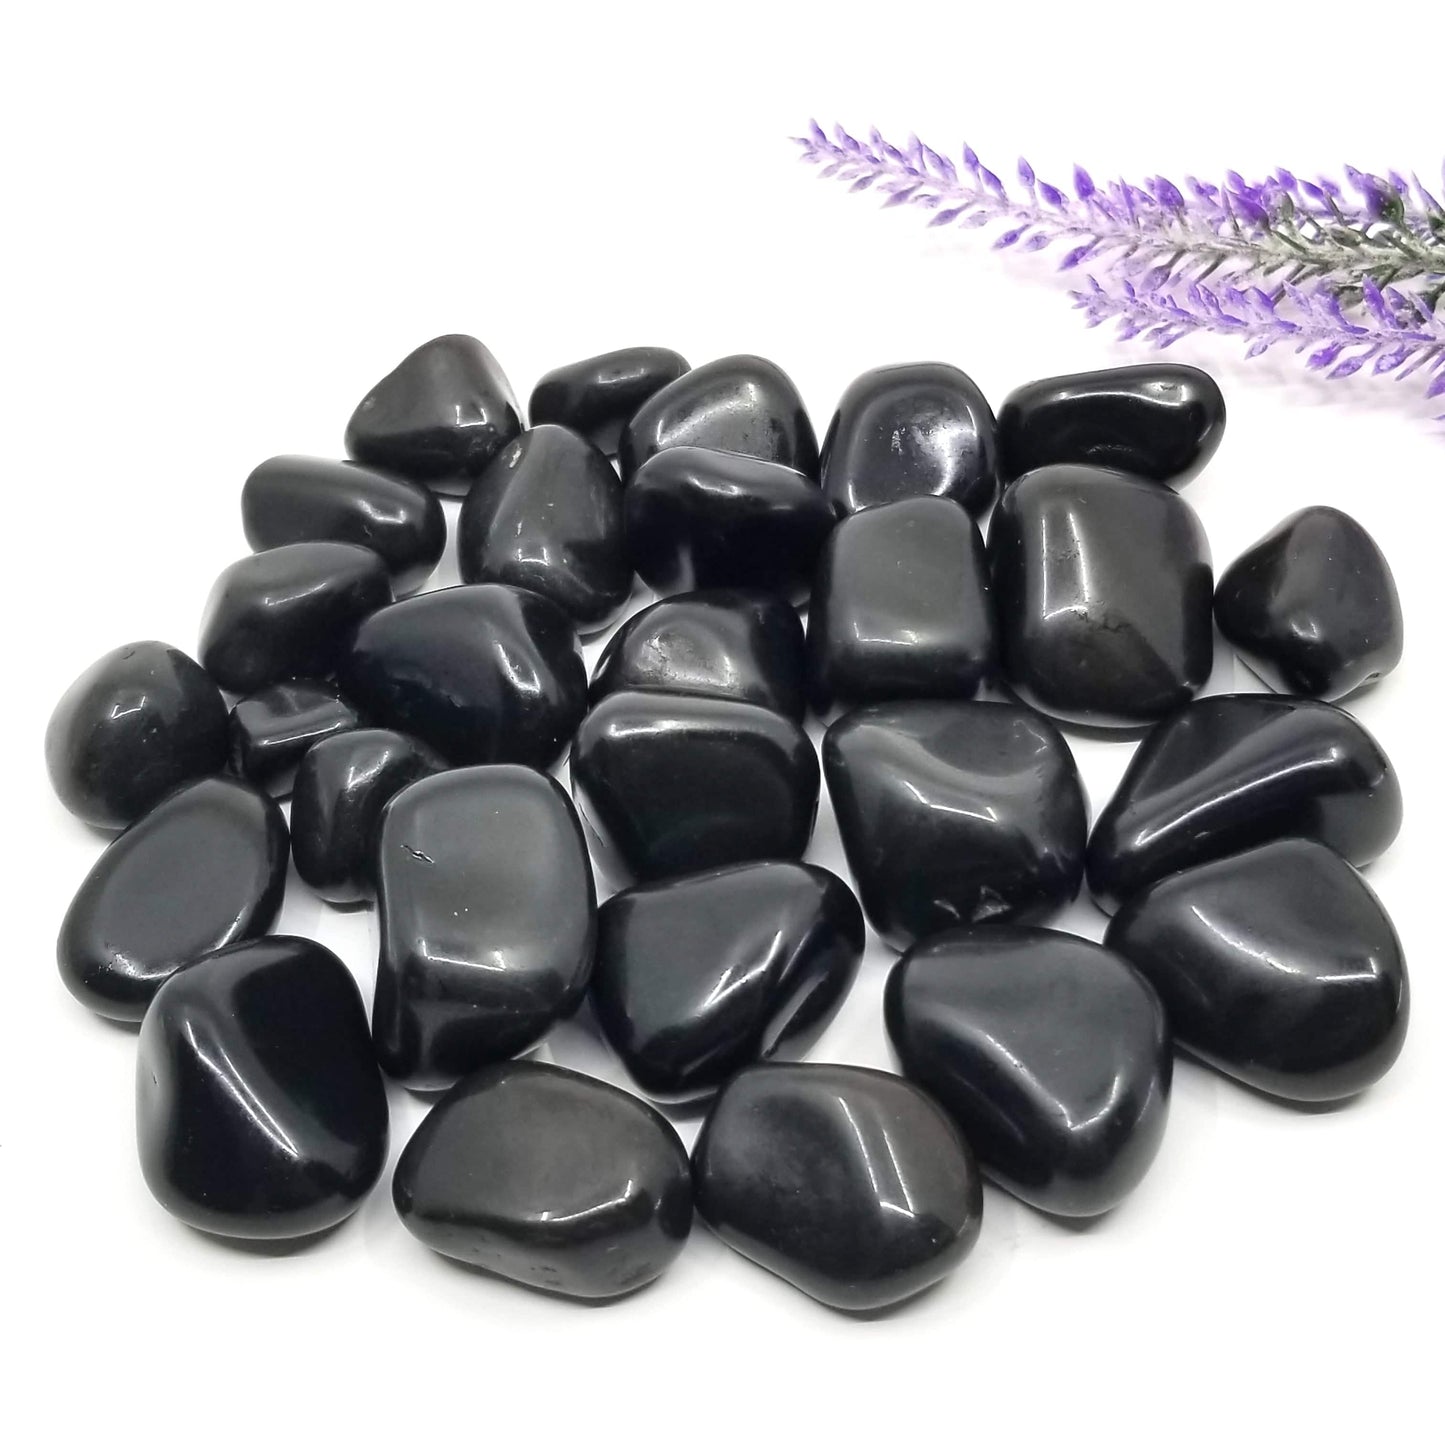 Black Tourmaline Tumbled Stones 1 LB